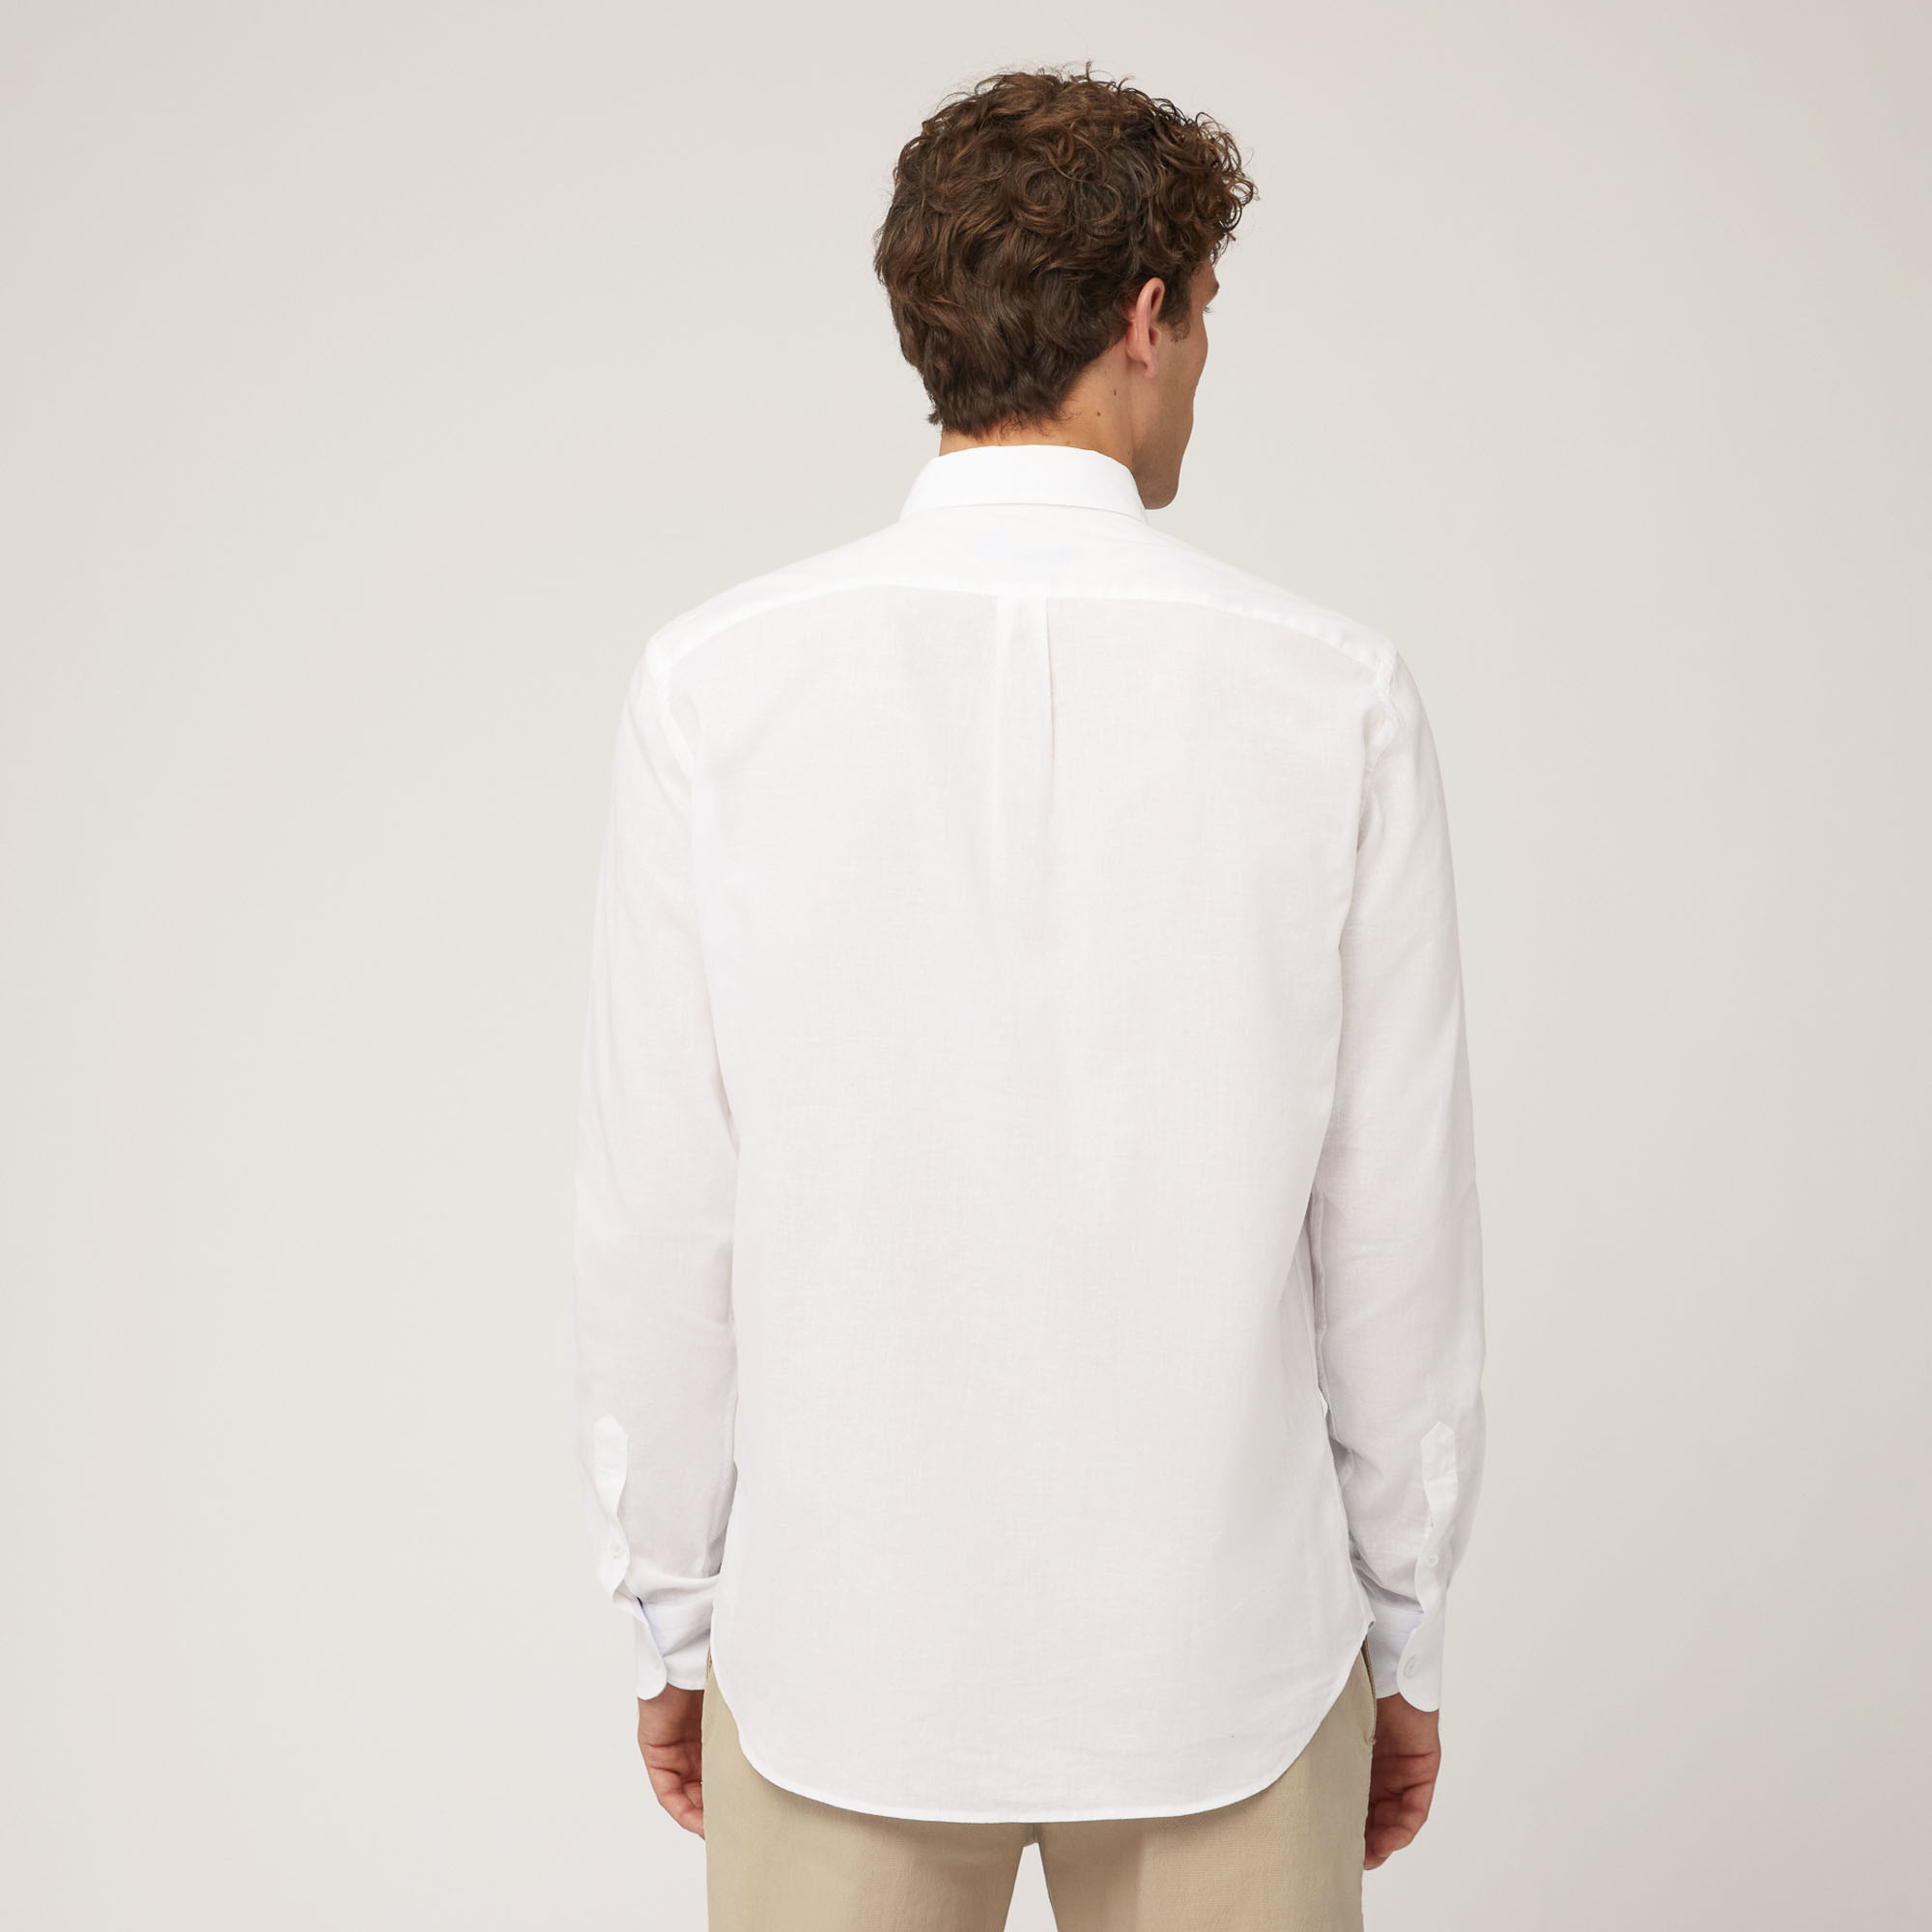 Camicia In Lino E Cotone Con Riquadri A Contrasto, Bianco, large image number 1